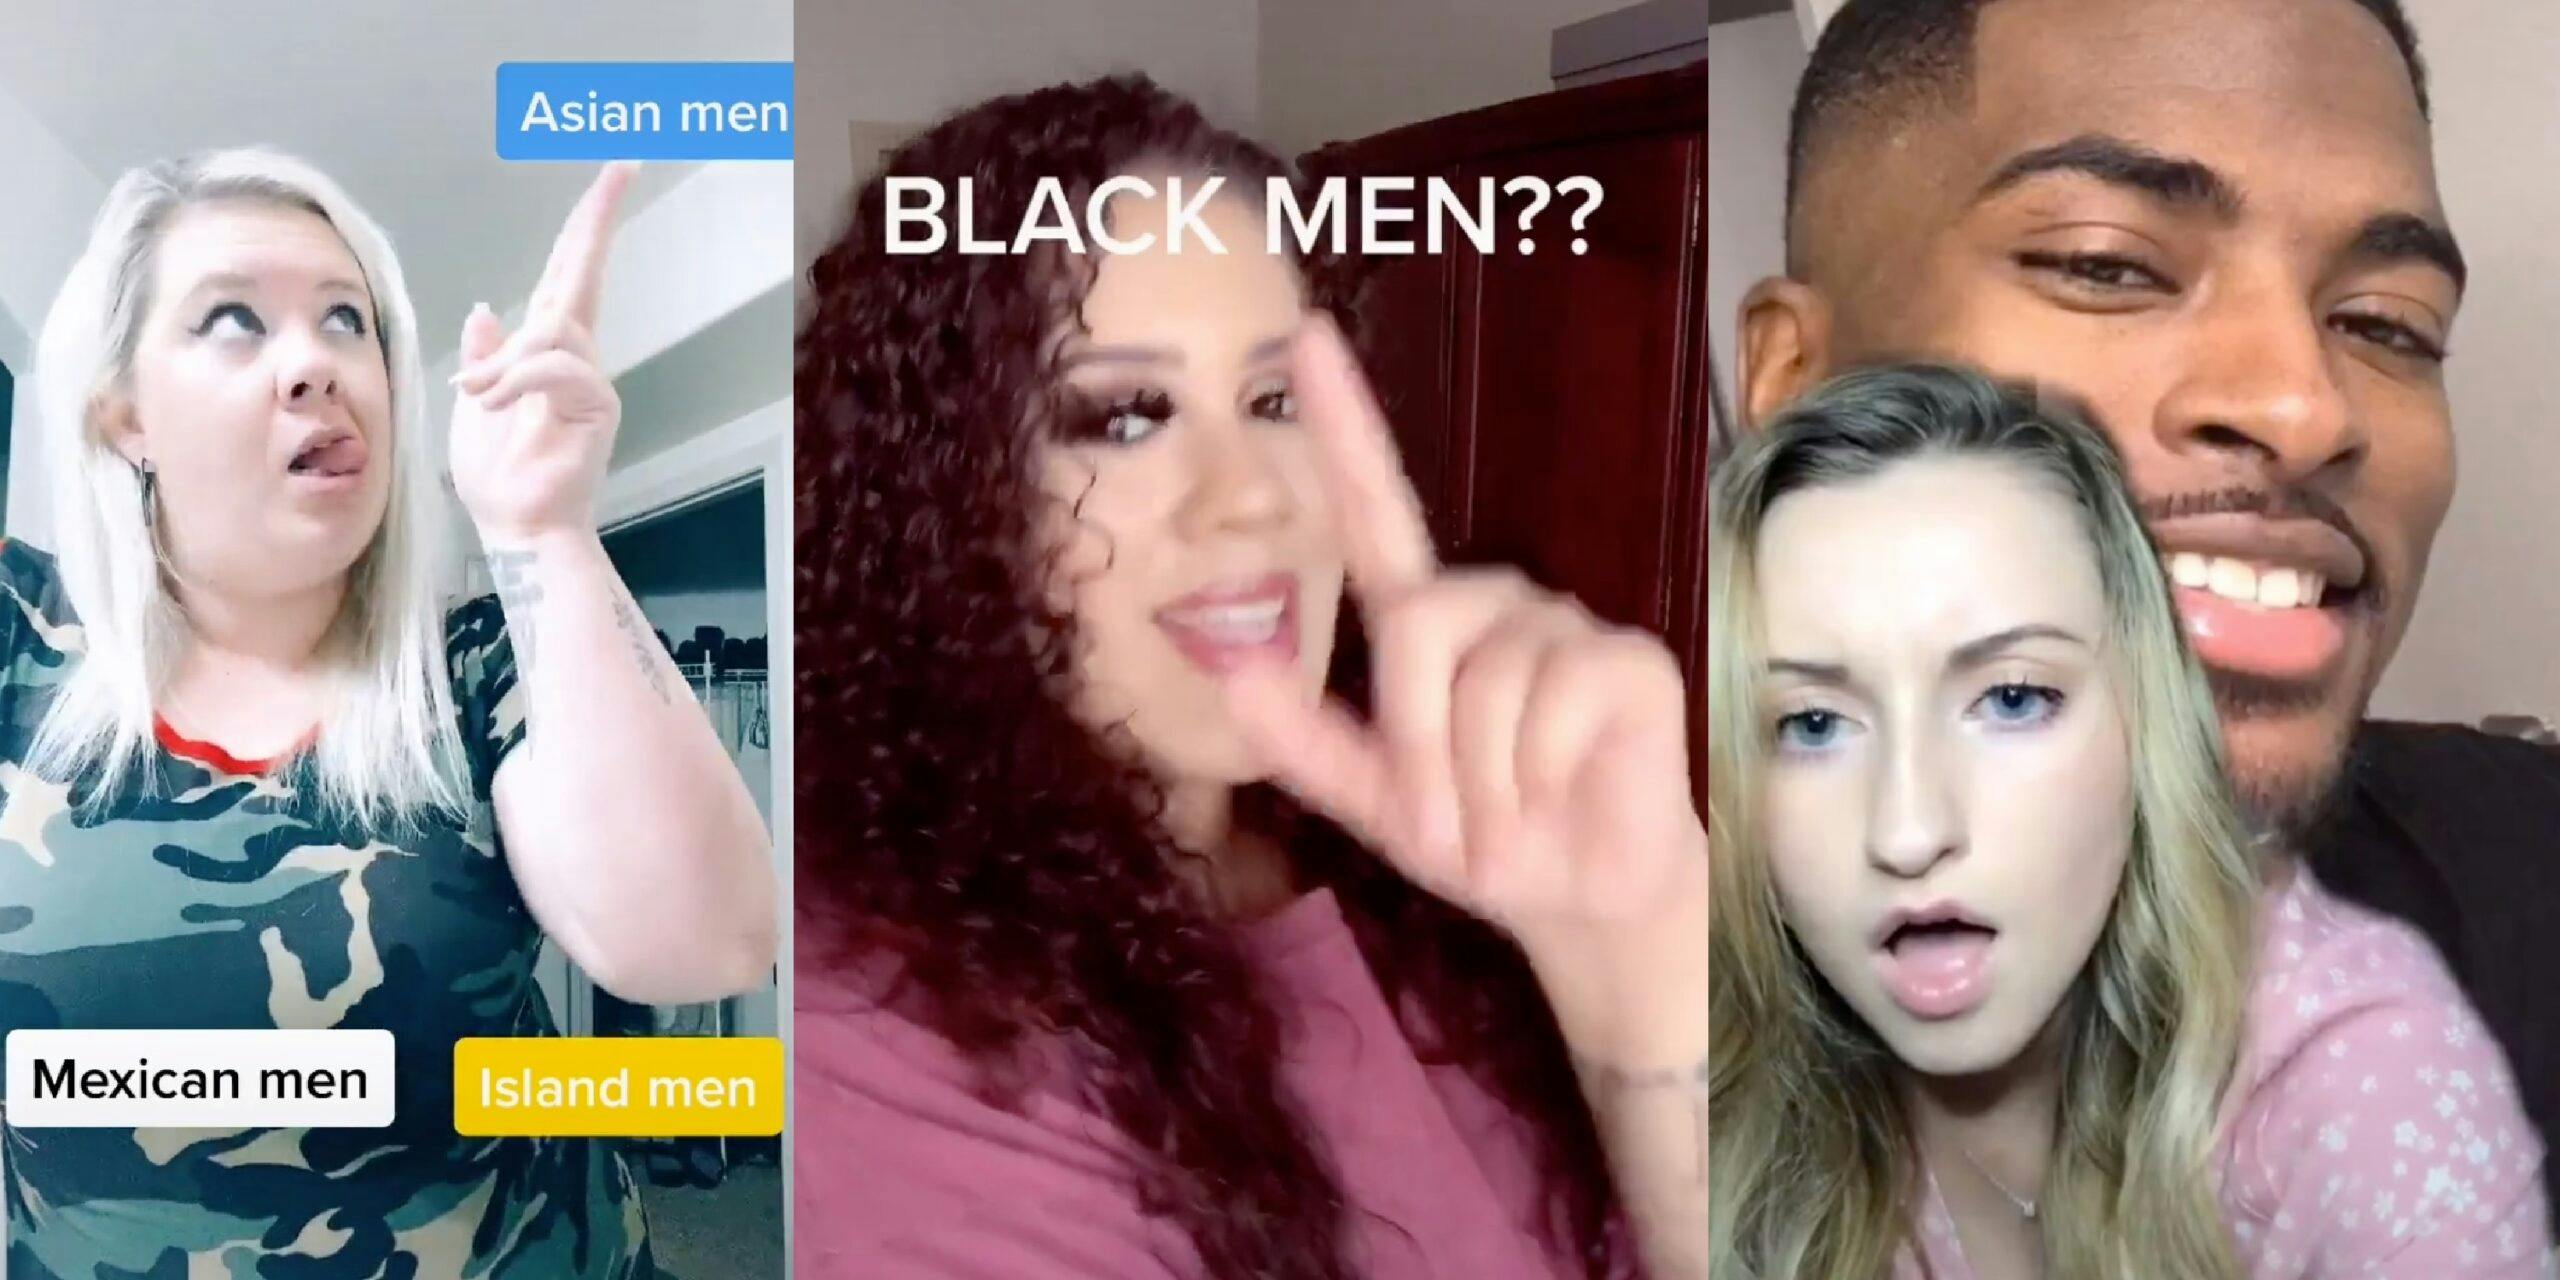 White girls are fetishizing Black men in TikTok videos